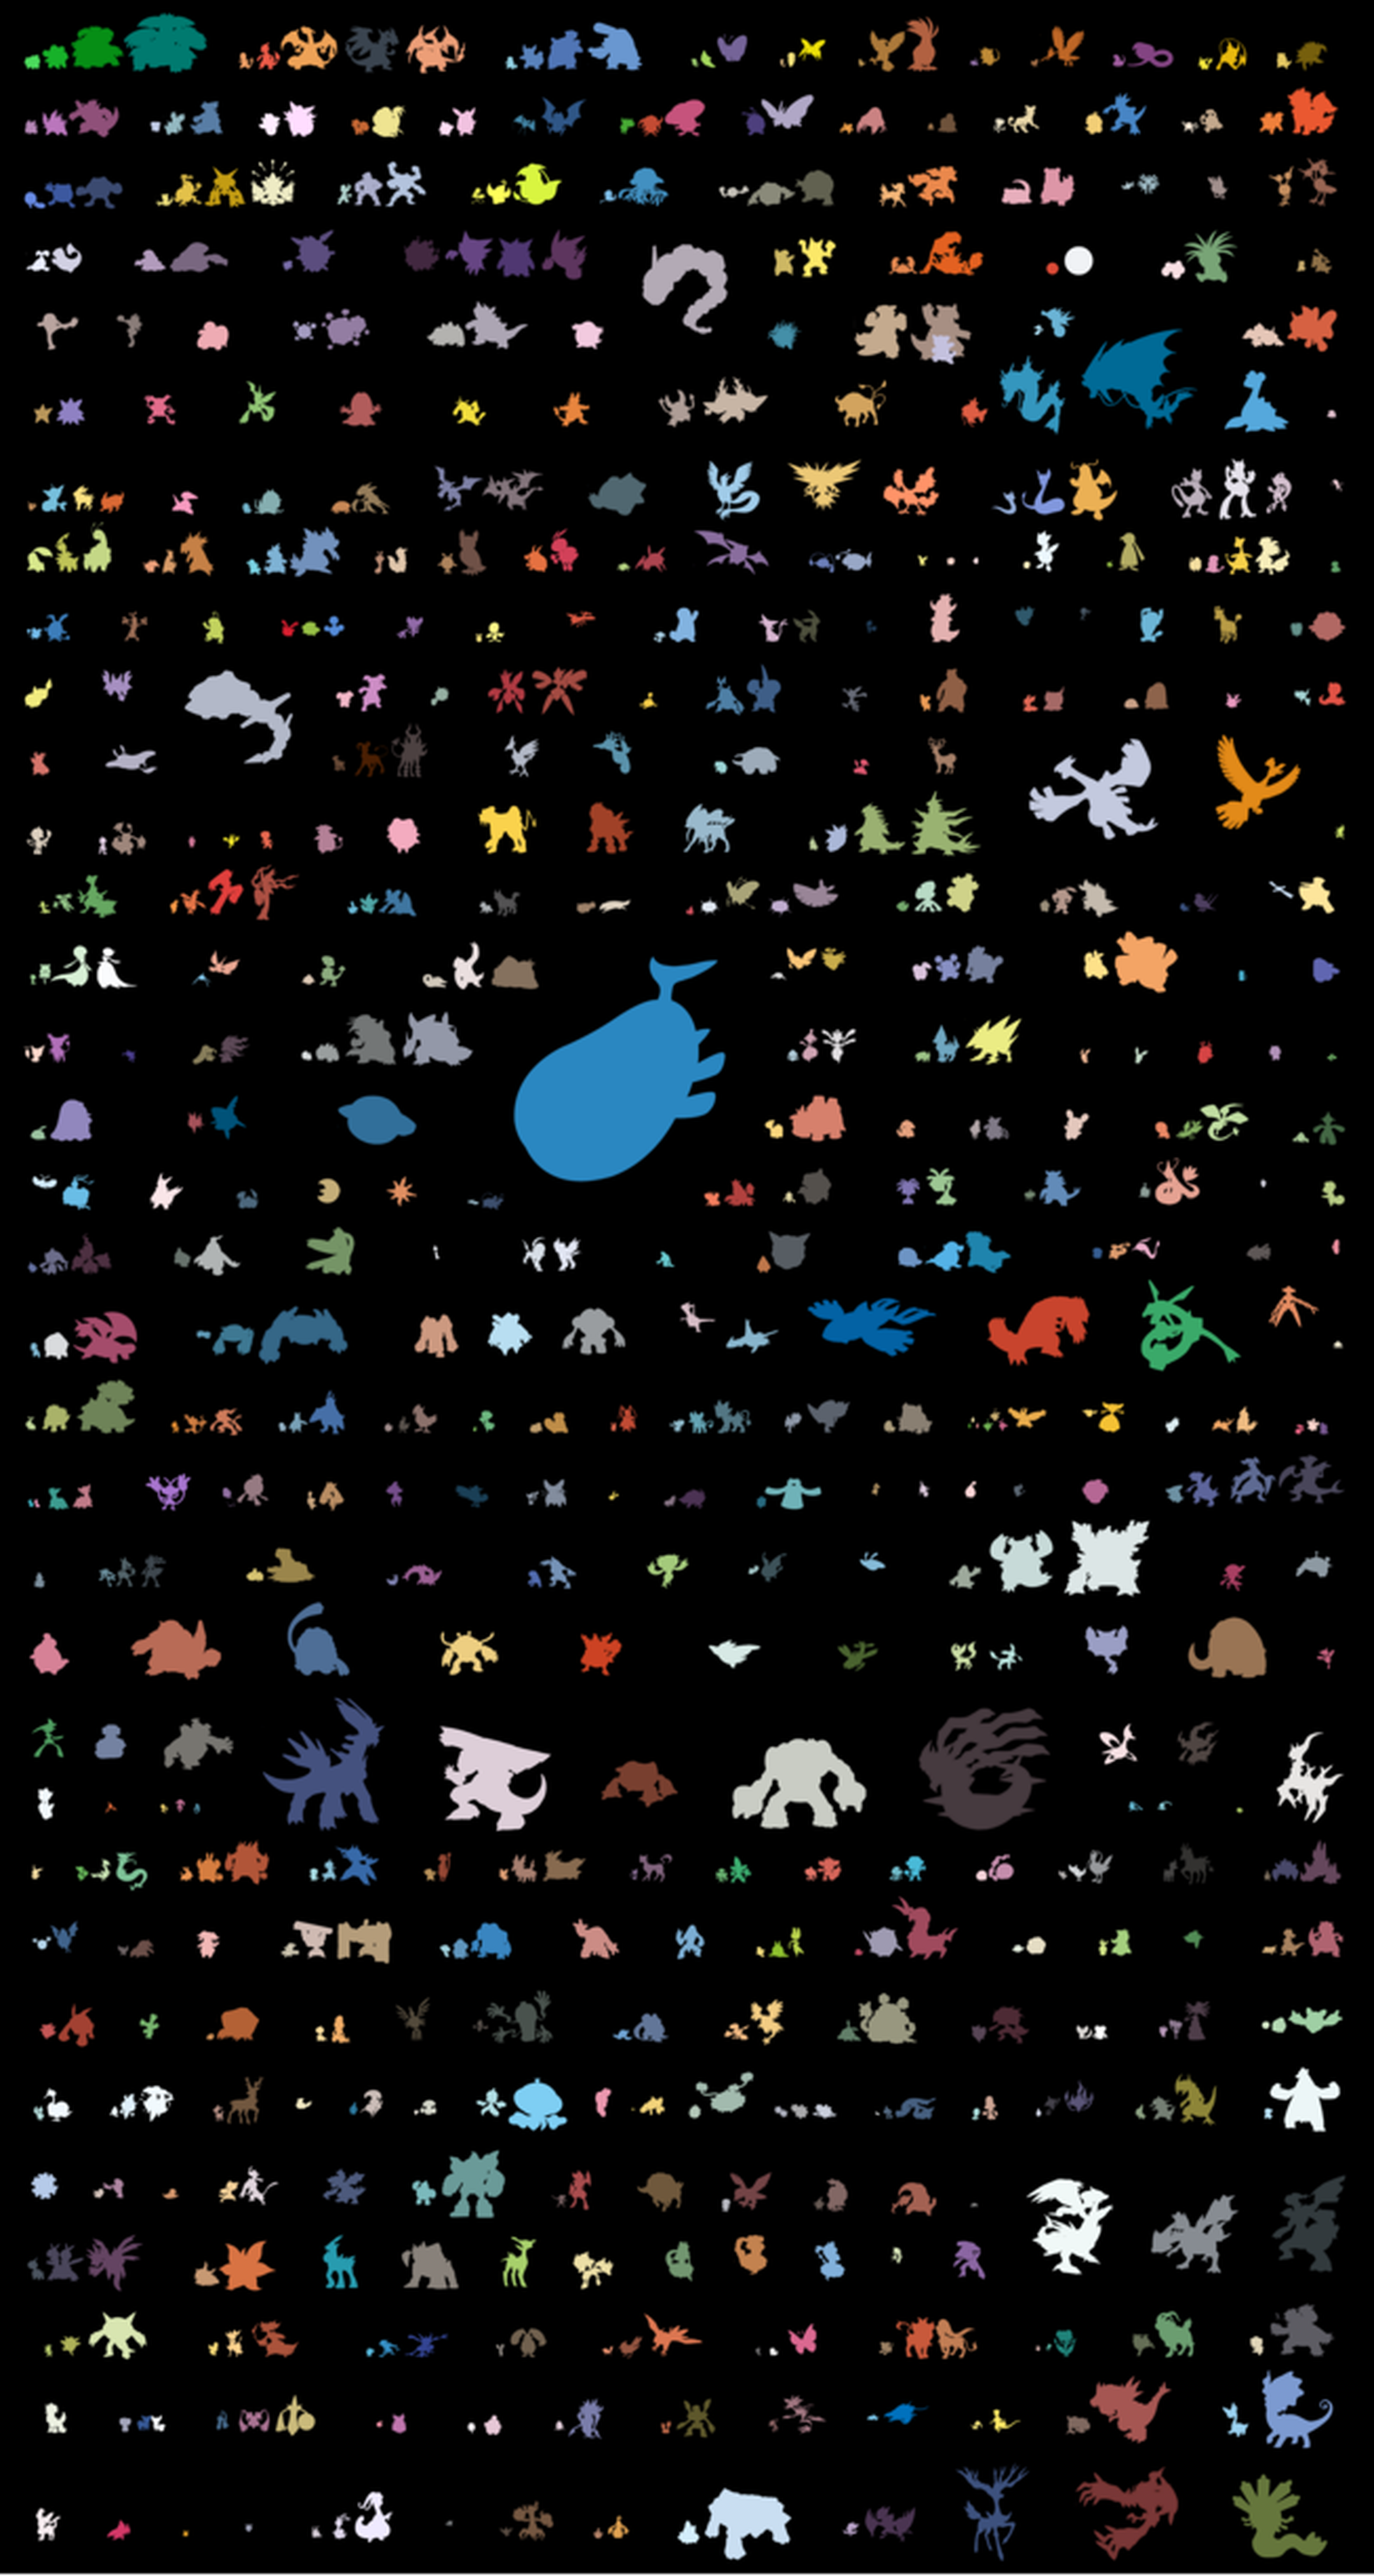 Todos los Pokémon y sus Mega Evoluciones a escala